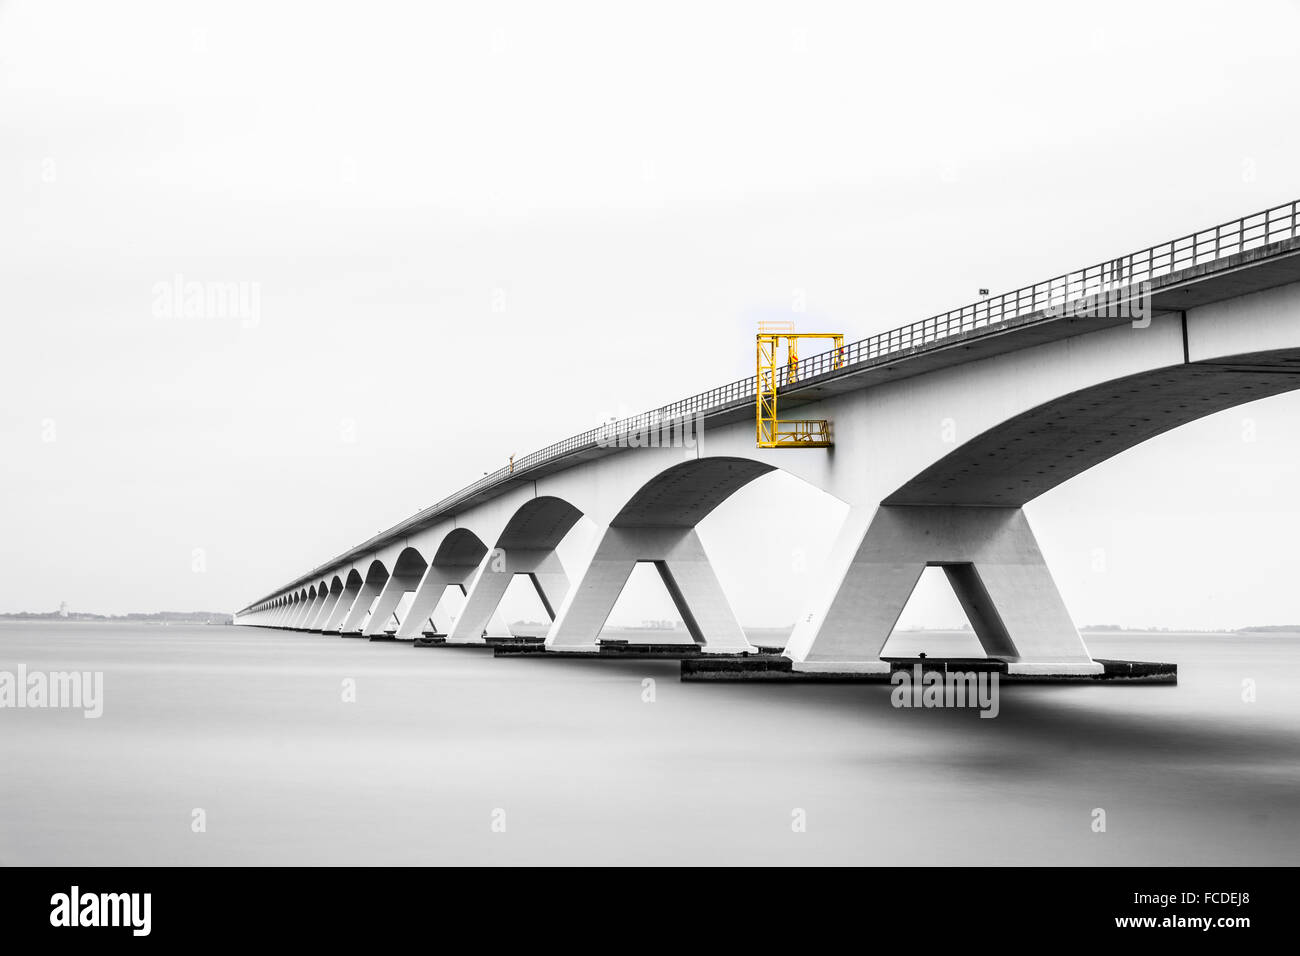 Niederlande, Zierikzee, Zeeland-Brücke. Oosterschelde-Mündung. Schouwen-Duiveland und Noord-Beveland. Langzeitbelichtung Stockfoto